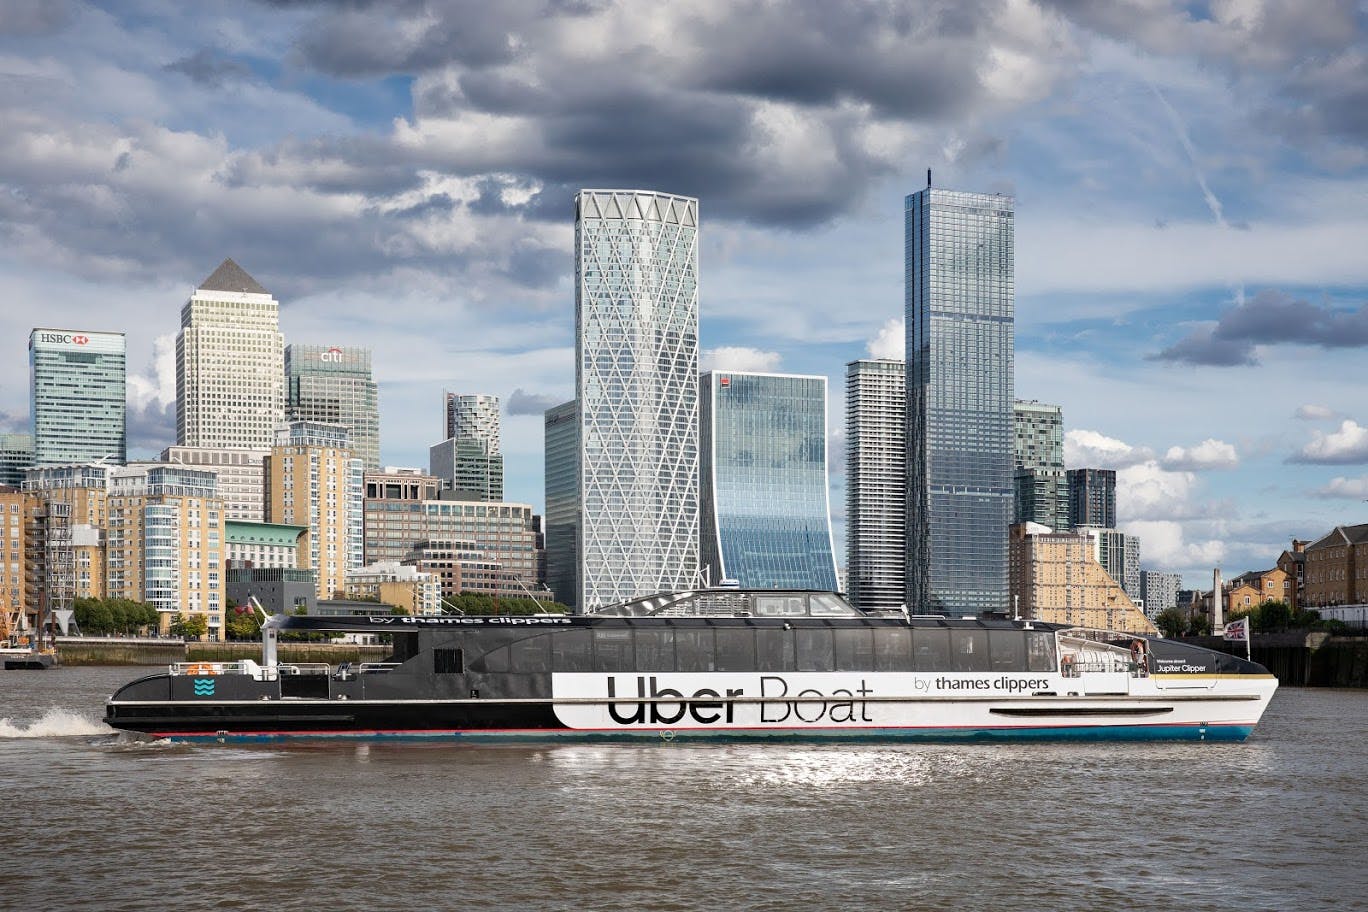 Enkelbiljett till Thames Clippers Uber Boat